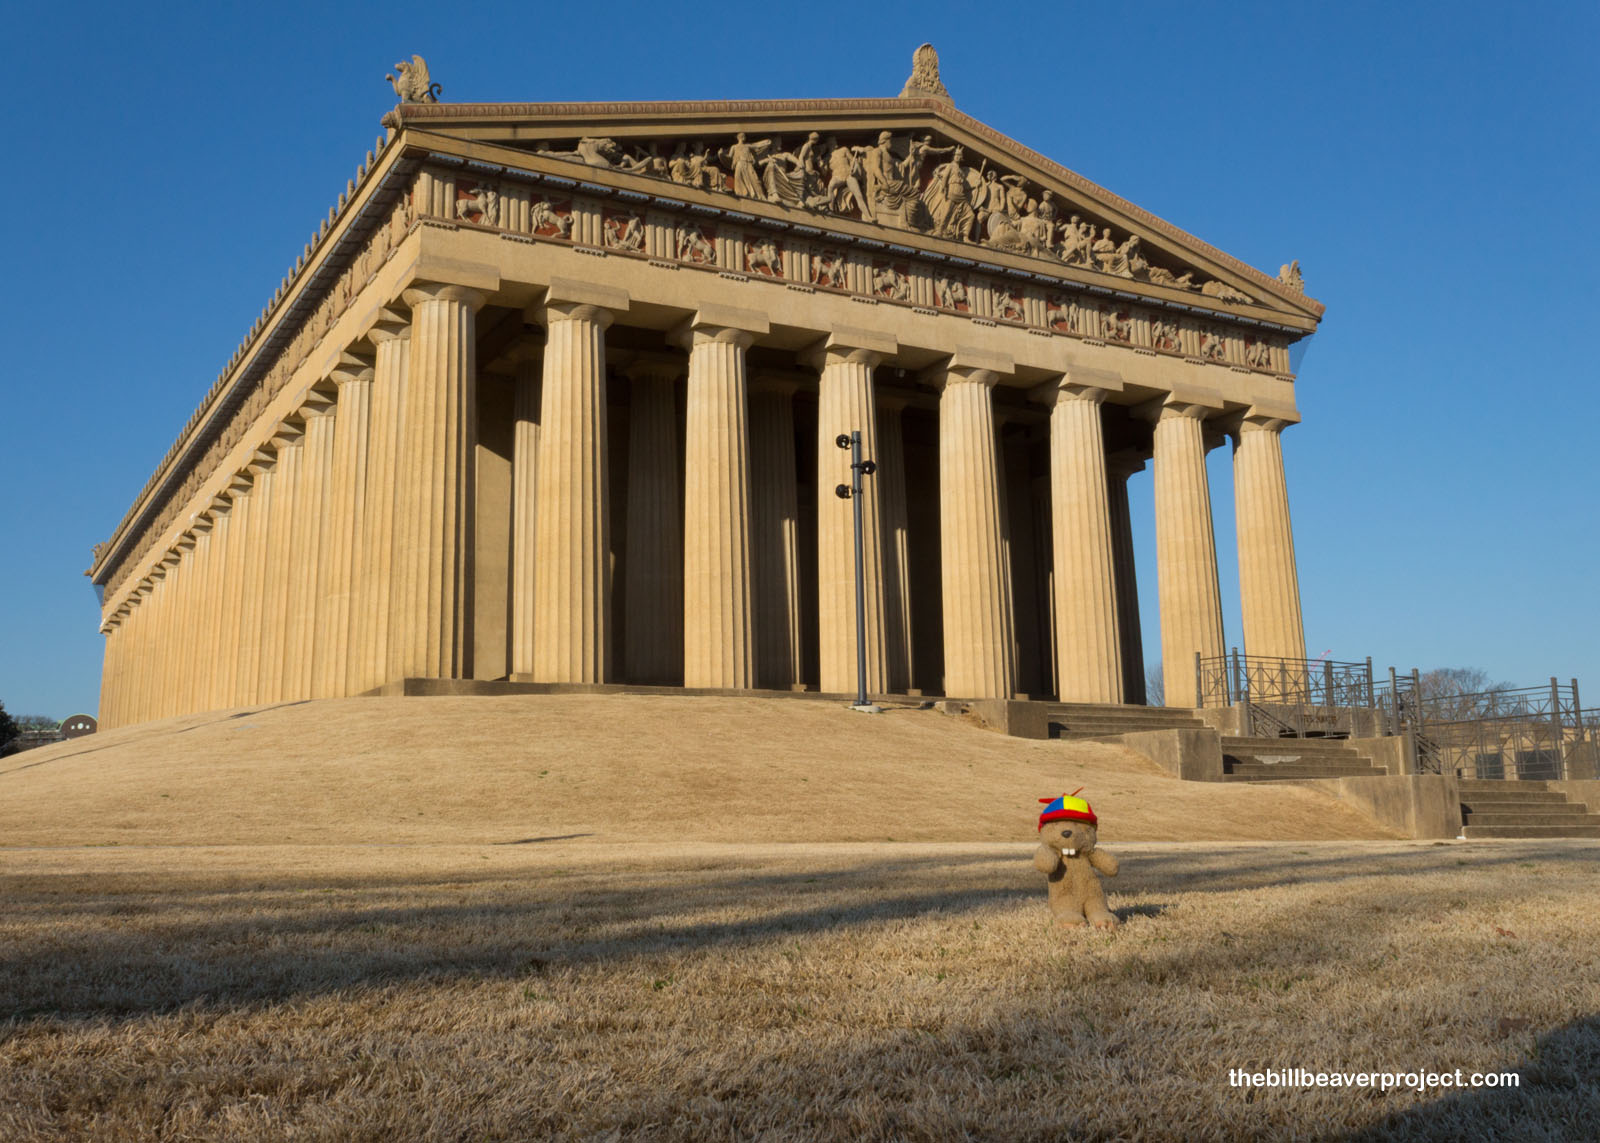 The Parthenon of Nashville